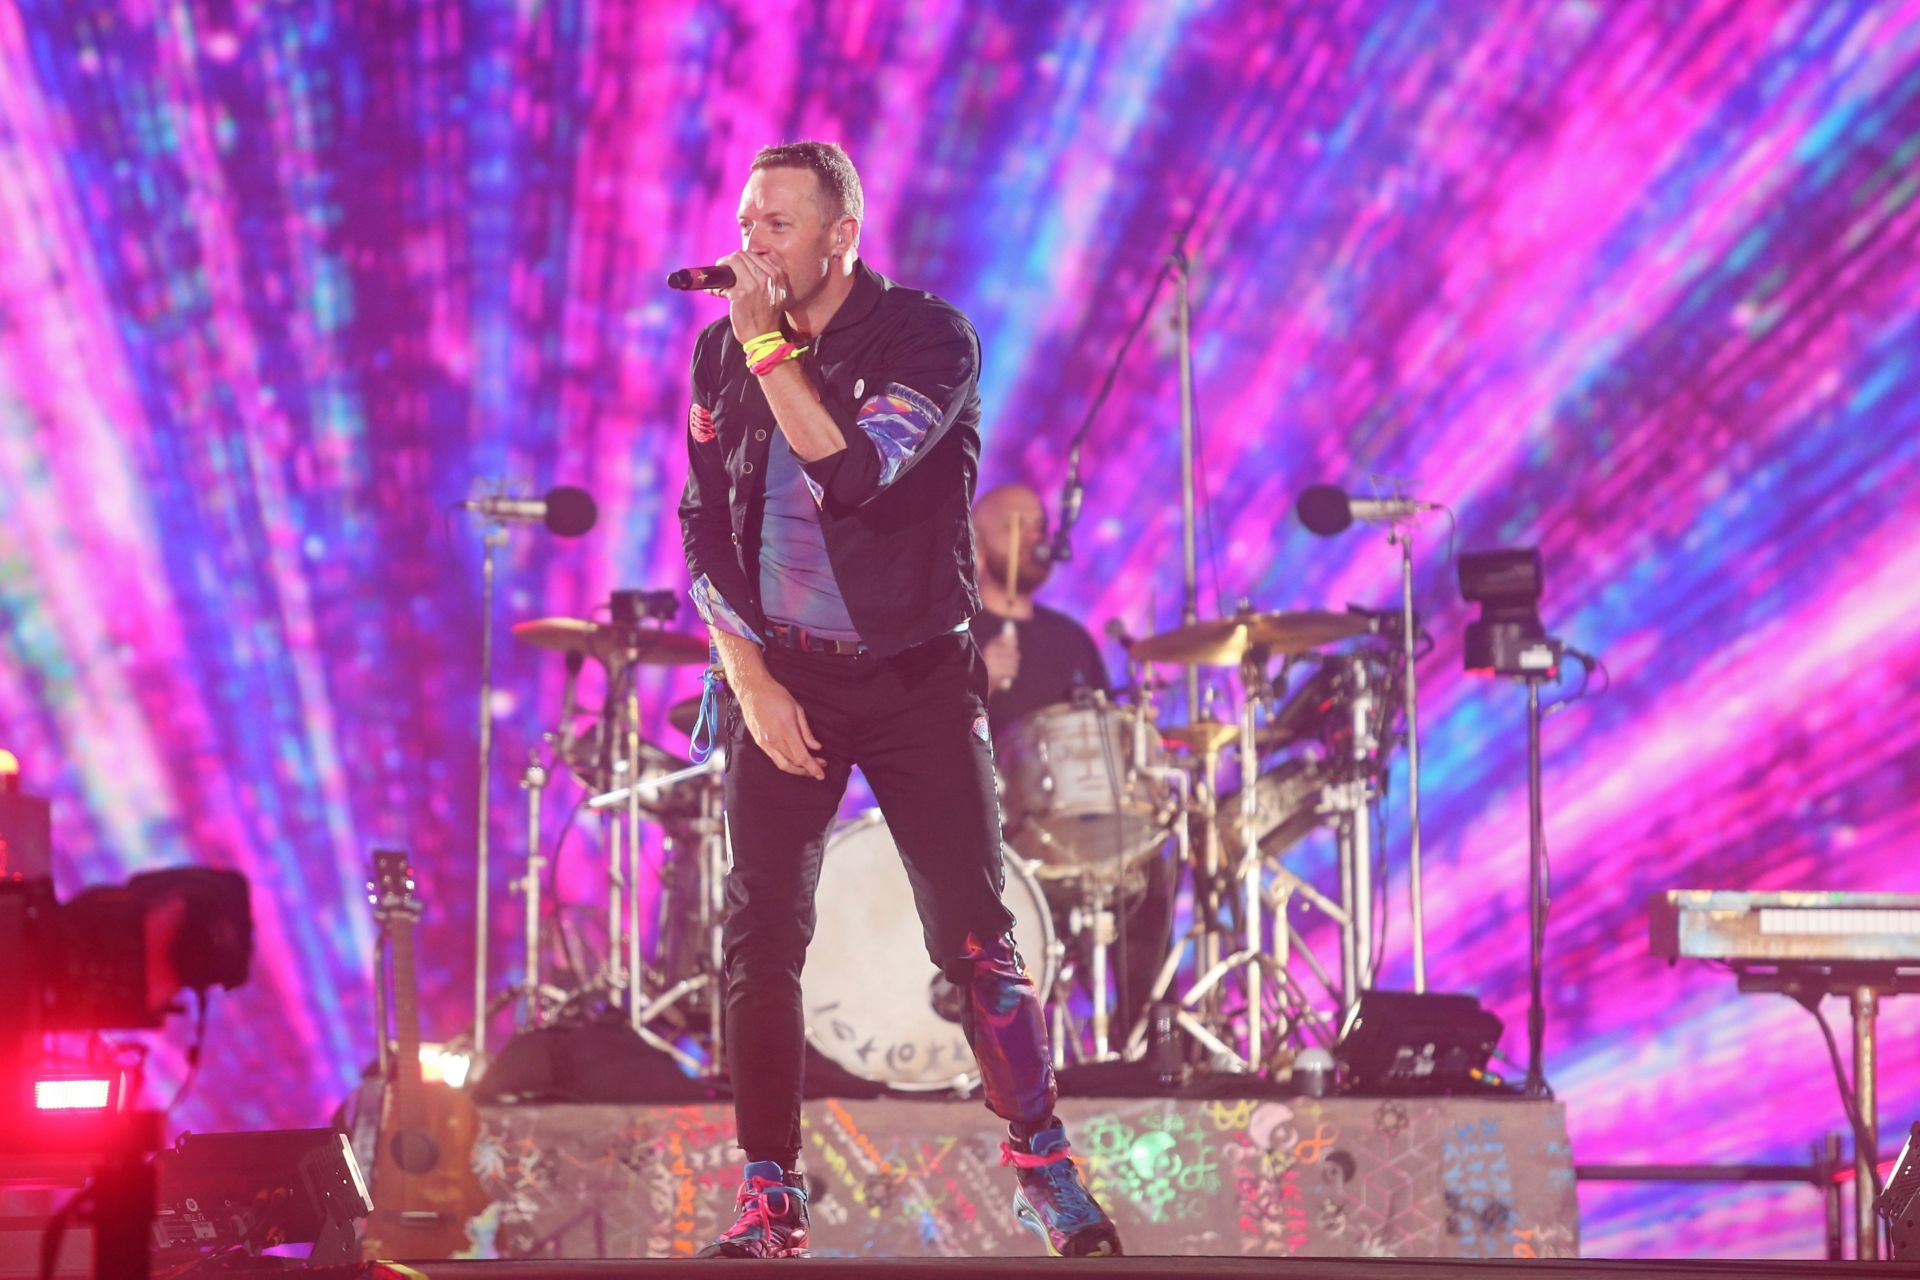 ZAPOPAN, JALISCO, 29MARZO2022.- Esta noche en el Estadio Akron se presento en concierto la banda británica de rock alternativo, Coldplay, en su gira “Music The Spheres Tour” y a donde se dieron cita miles de fanáticos de la banda.
FOTO: FERNANDO CARRANZA GARCIA / CUARTOSCURO.COM